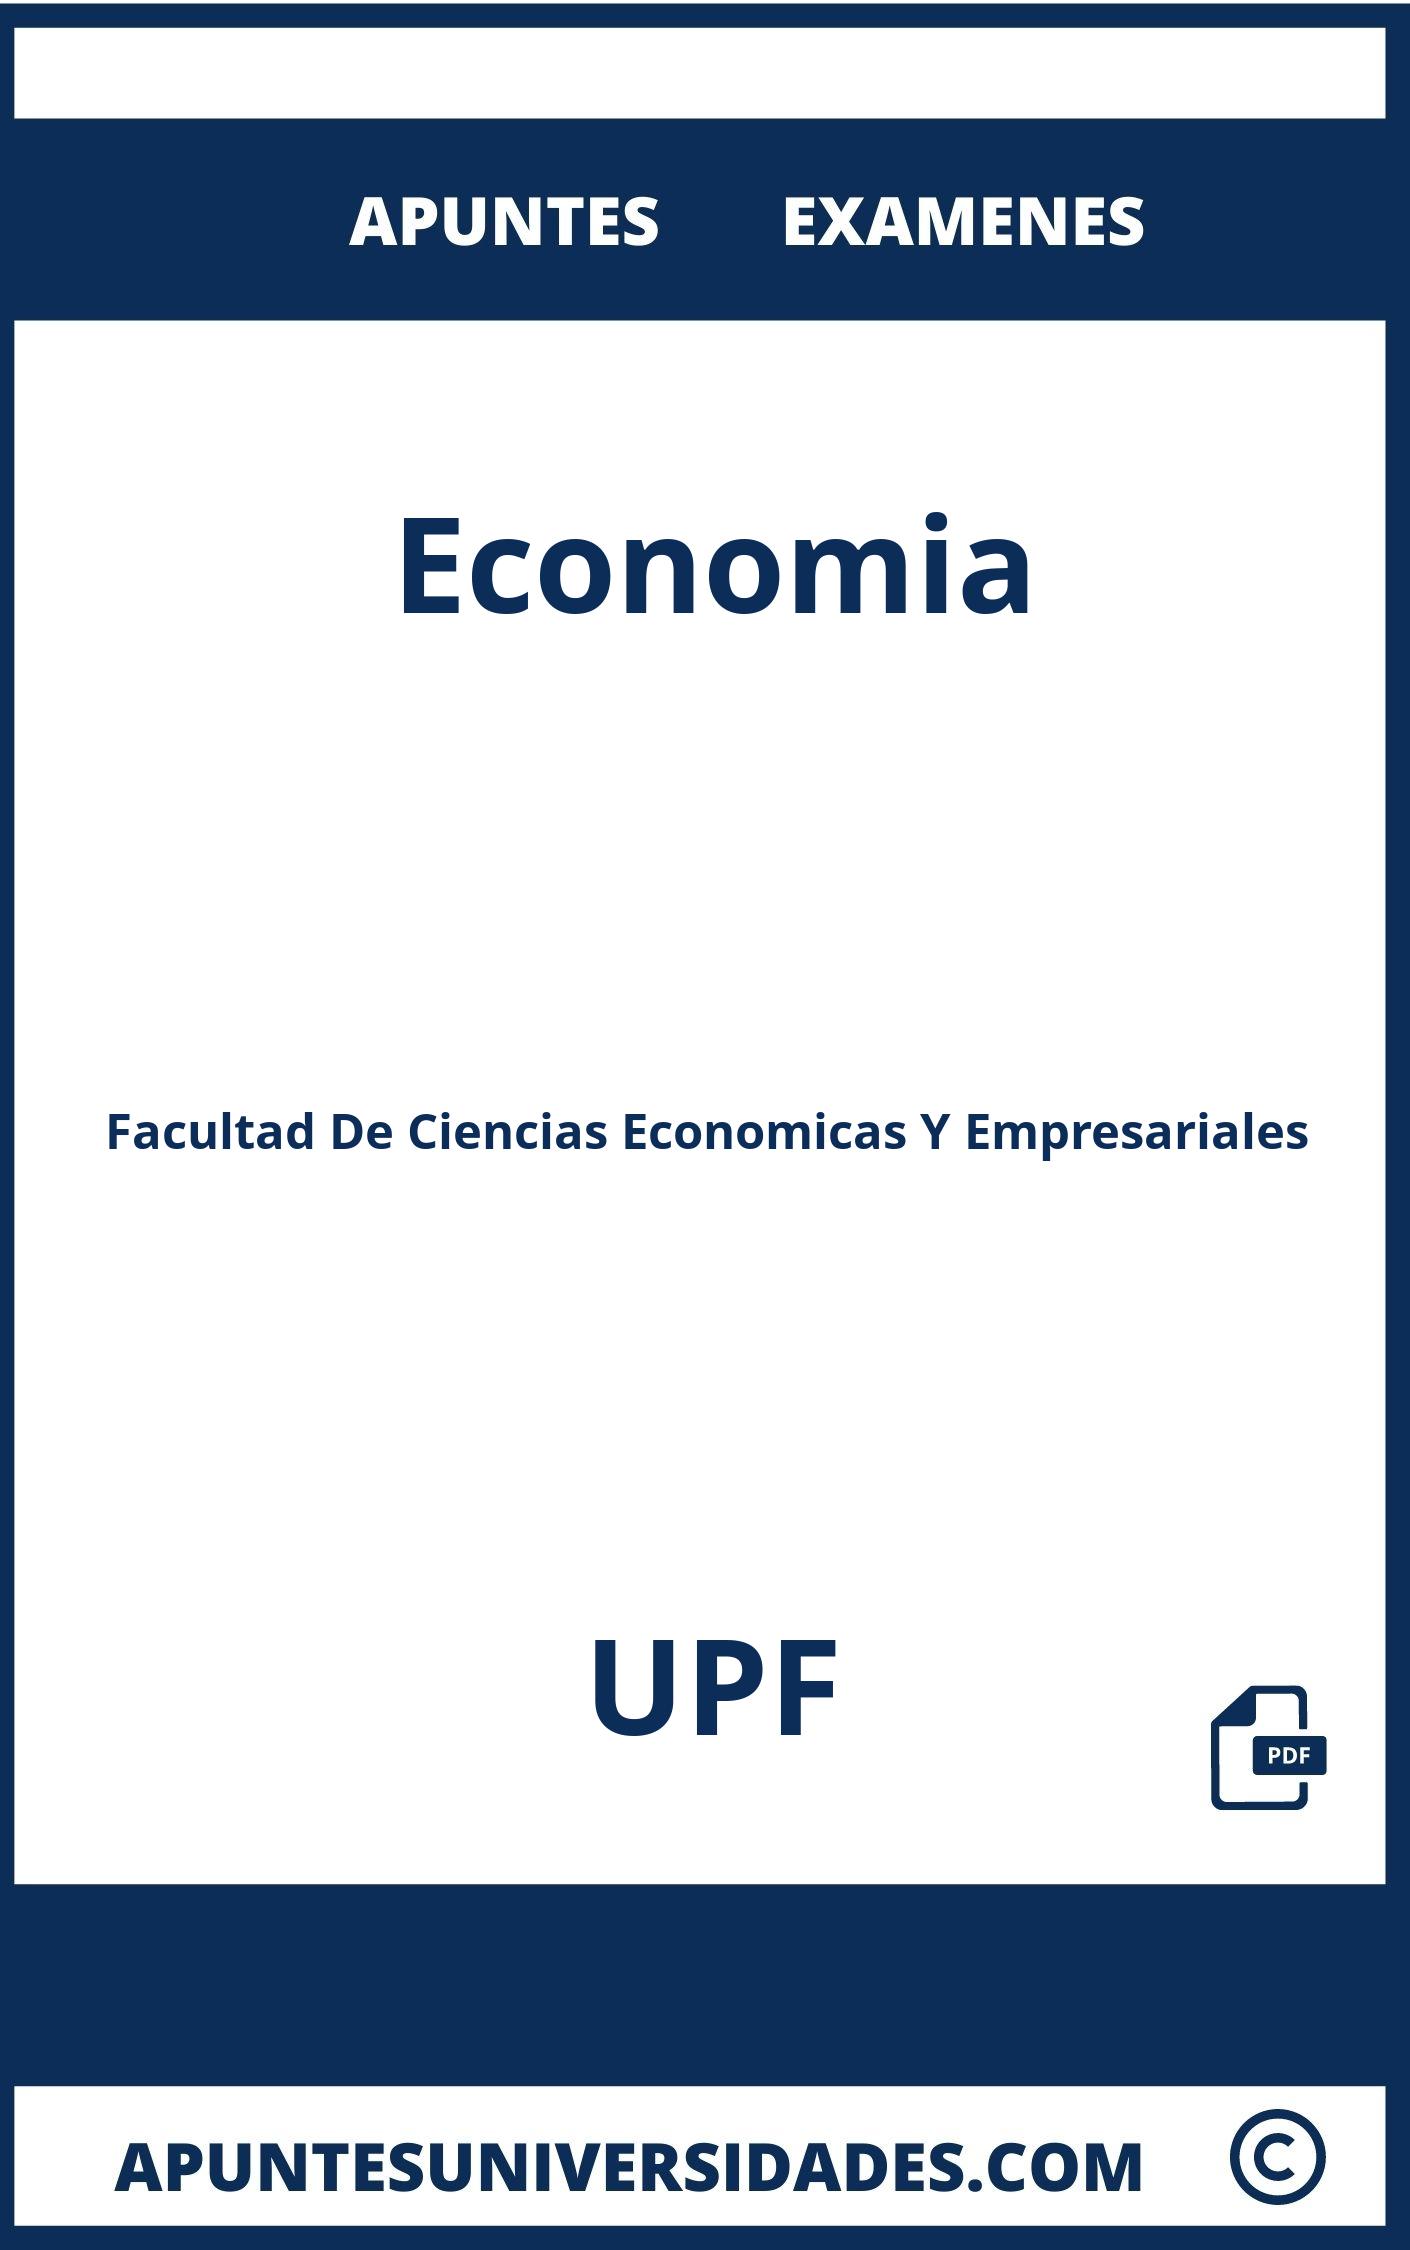 Apuntes y Examenes Economia UPF